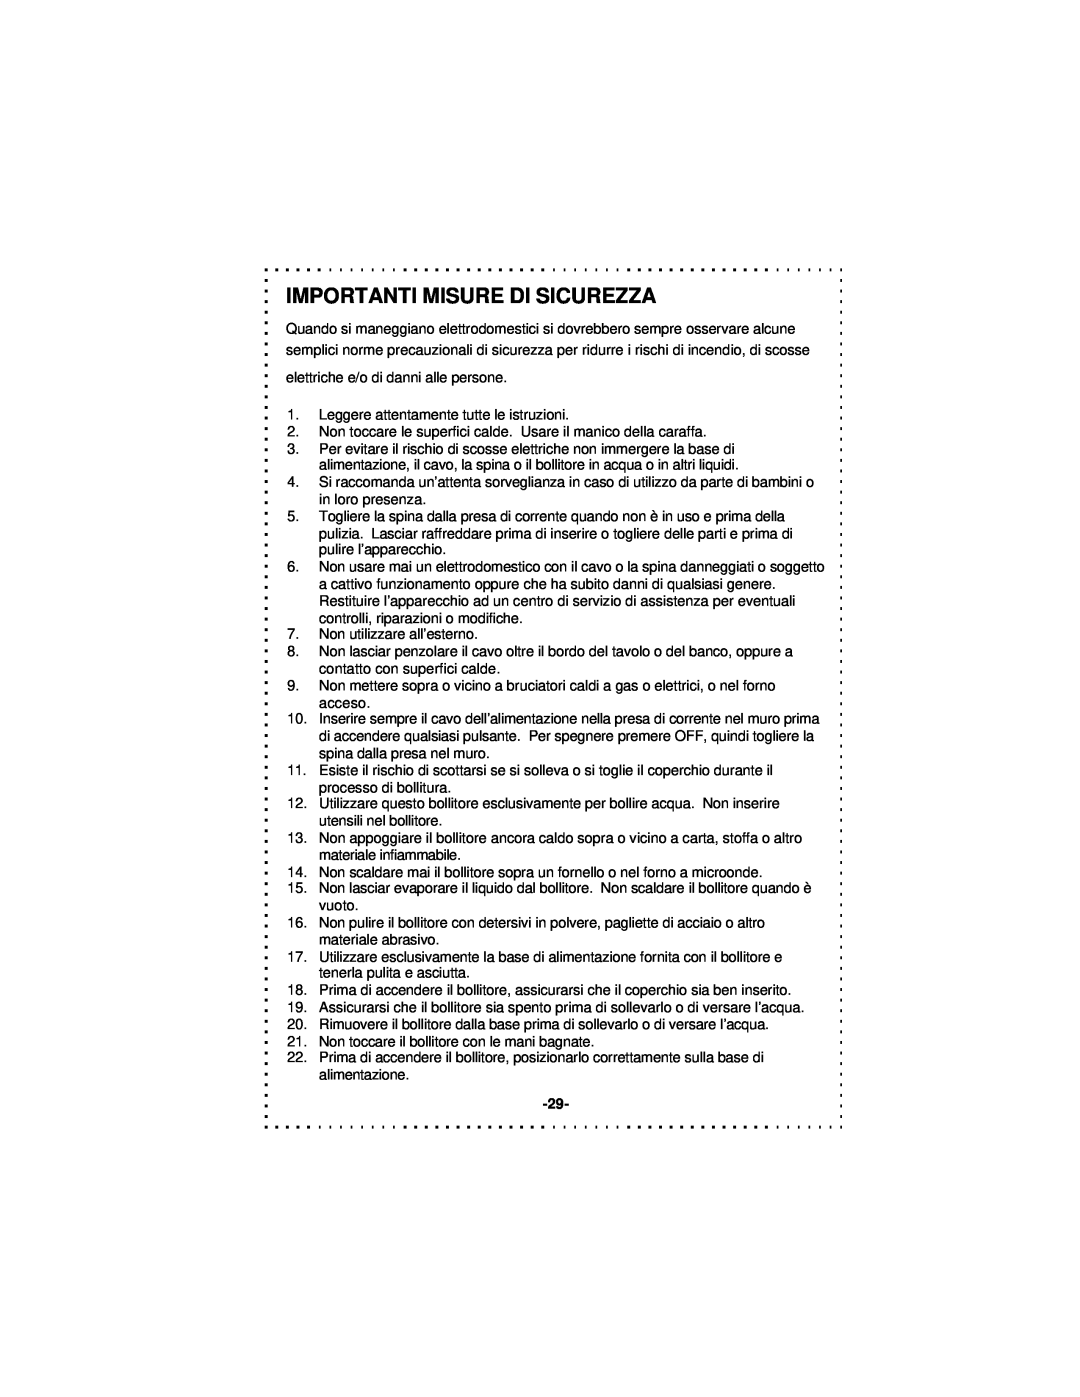 DeLonghi DSJ900 instruction manual Importanti Misure Di Sicurezza 